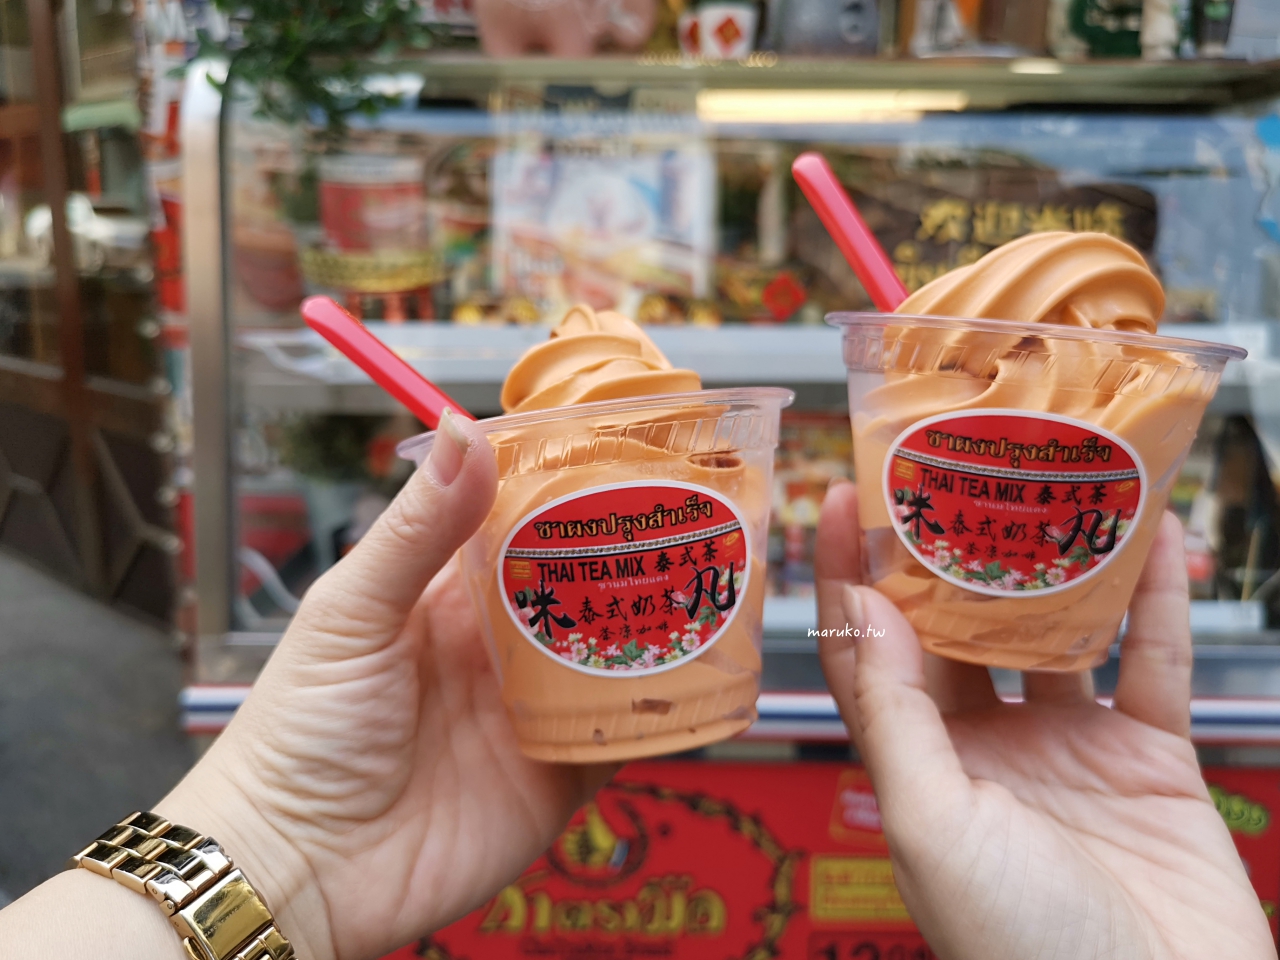 【屏東】 咪丸媽泰式奶茶 隱藏在露營用品服飾店內的泰國手標紅茶 泰奶冰淇淋